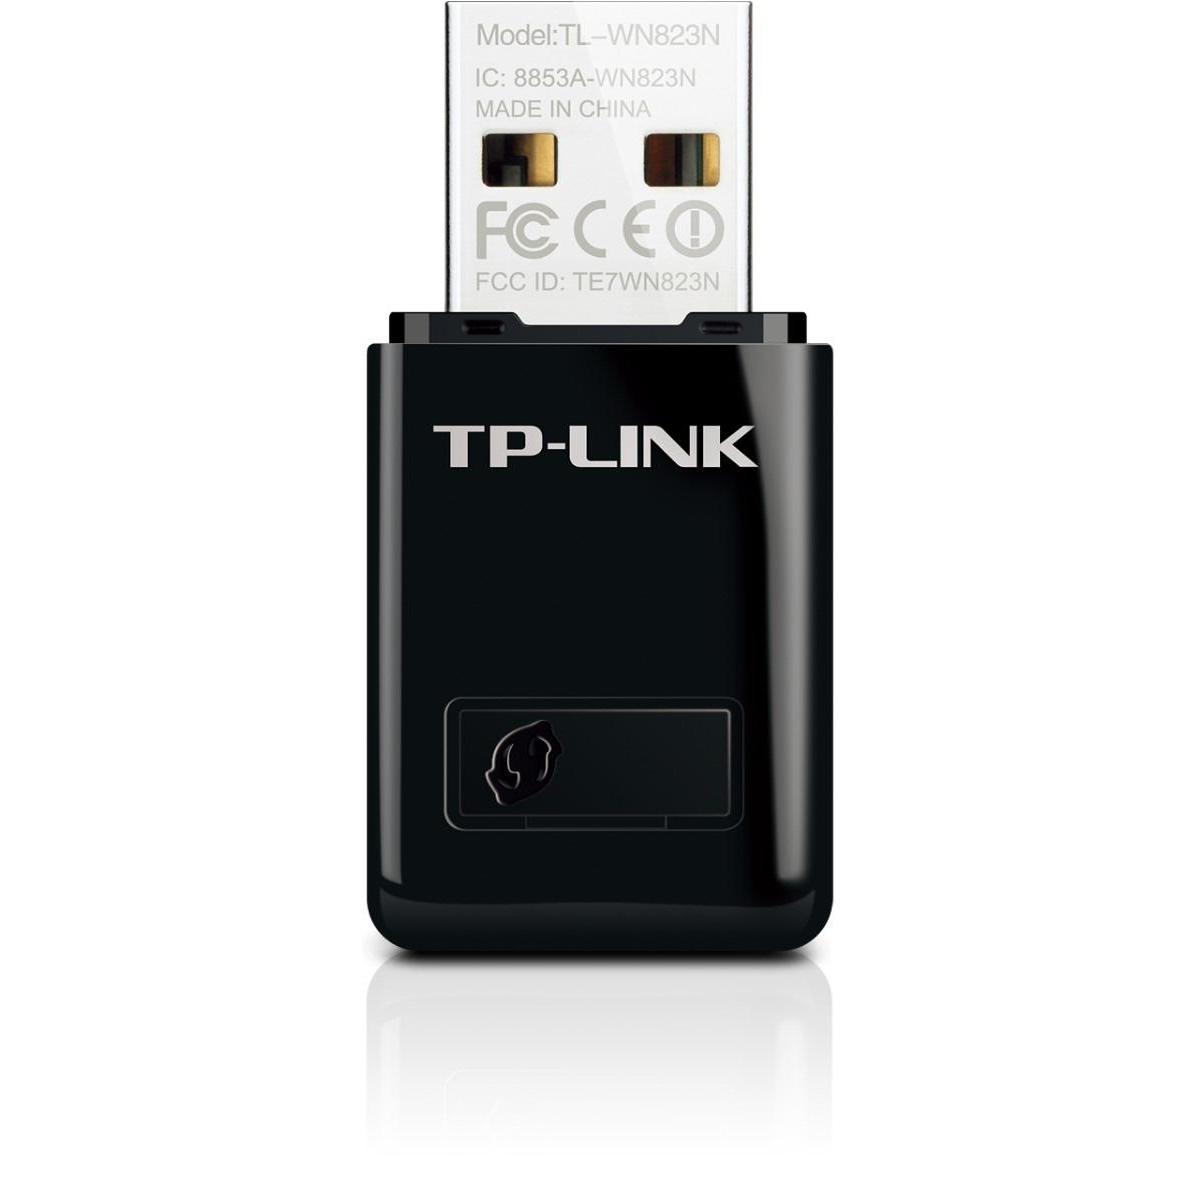  Si buscas Mini Adaptador Usb Wifi N 300mbps Tl-wn823n Tp-link Oferta puedes comprarlo con DD TECH está en venta al mejor precio